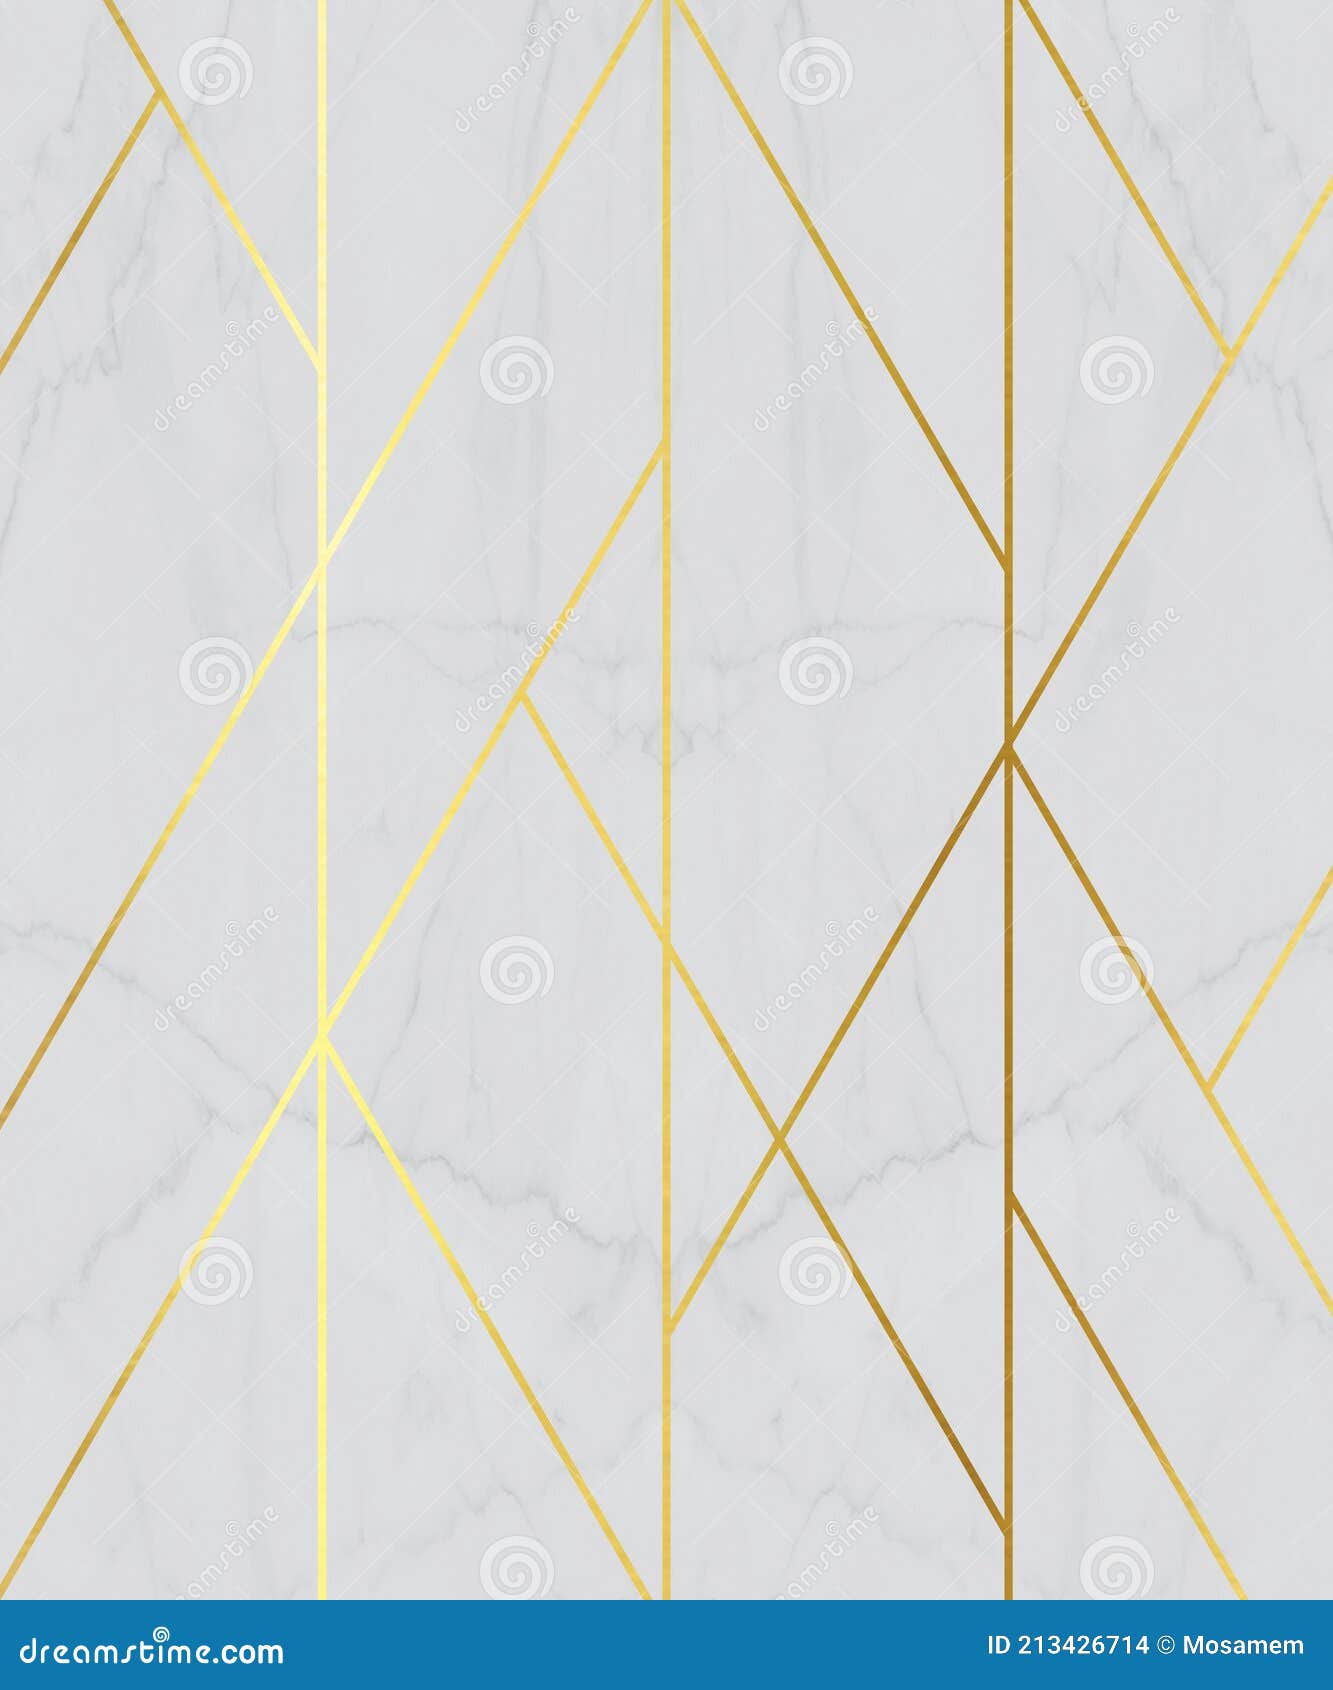 Giấy dán tường 3D hiện đại với đường viền vàng nền đá hoa vàng trắng sẽ khiến cho không gian sống của bạn trở nên mới mẻ và đẳng cấp hơn bao giờ hết. Thiết kế tinh tế kết hợp với những chi tiết đường viền vàng rực rỡ sẽ làm nổi bật phòng khách hay phòng ngủ của bạn.